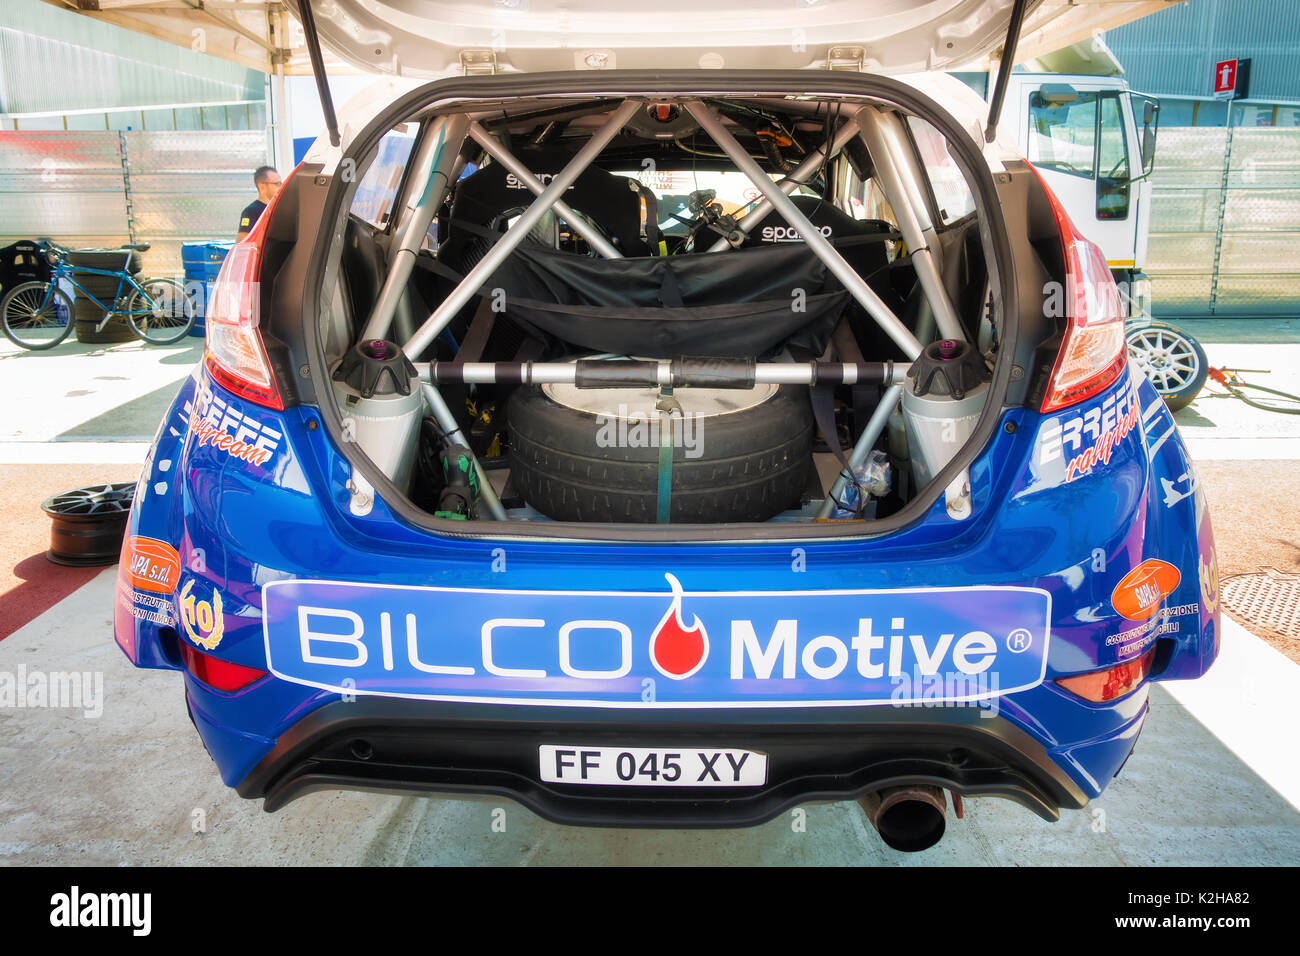 Milan, Italie - 5 août 2017 : voiture tuning show rallye au cours de l'expérience 2017 Milano Banque D'Images